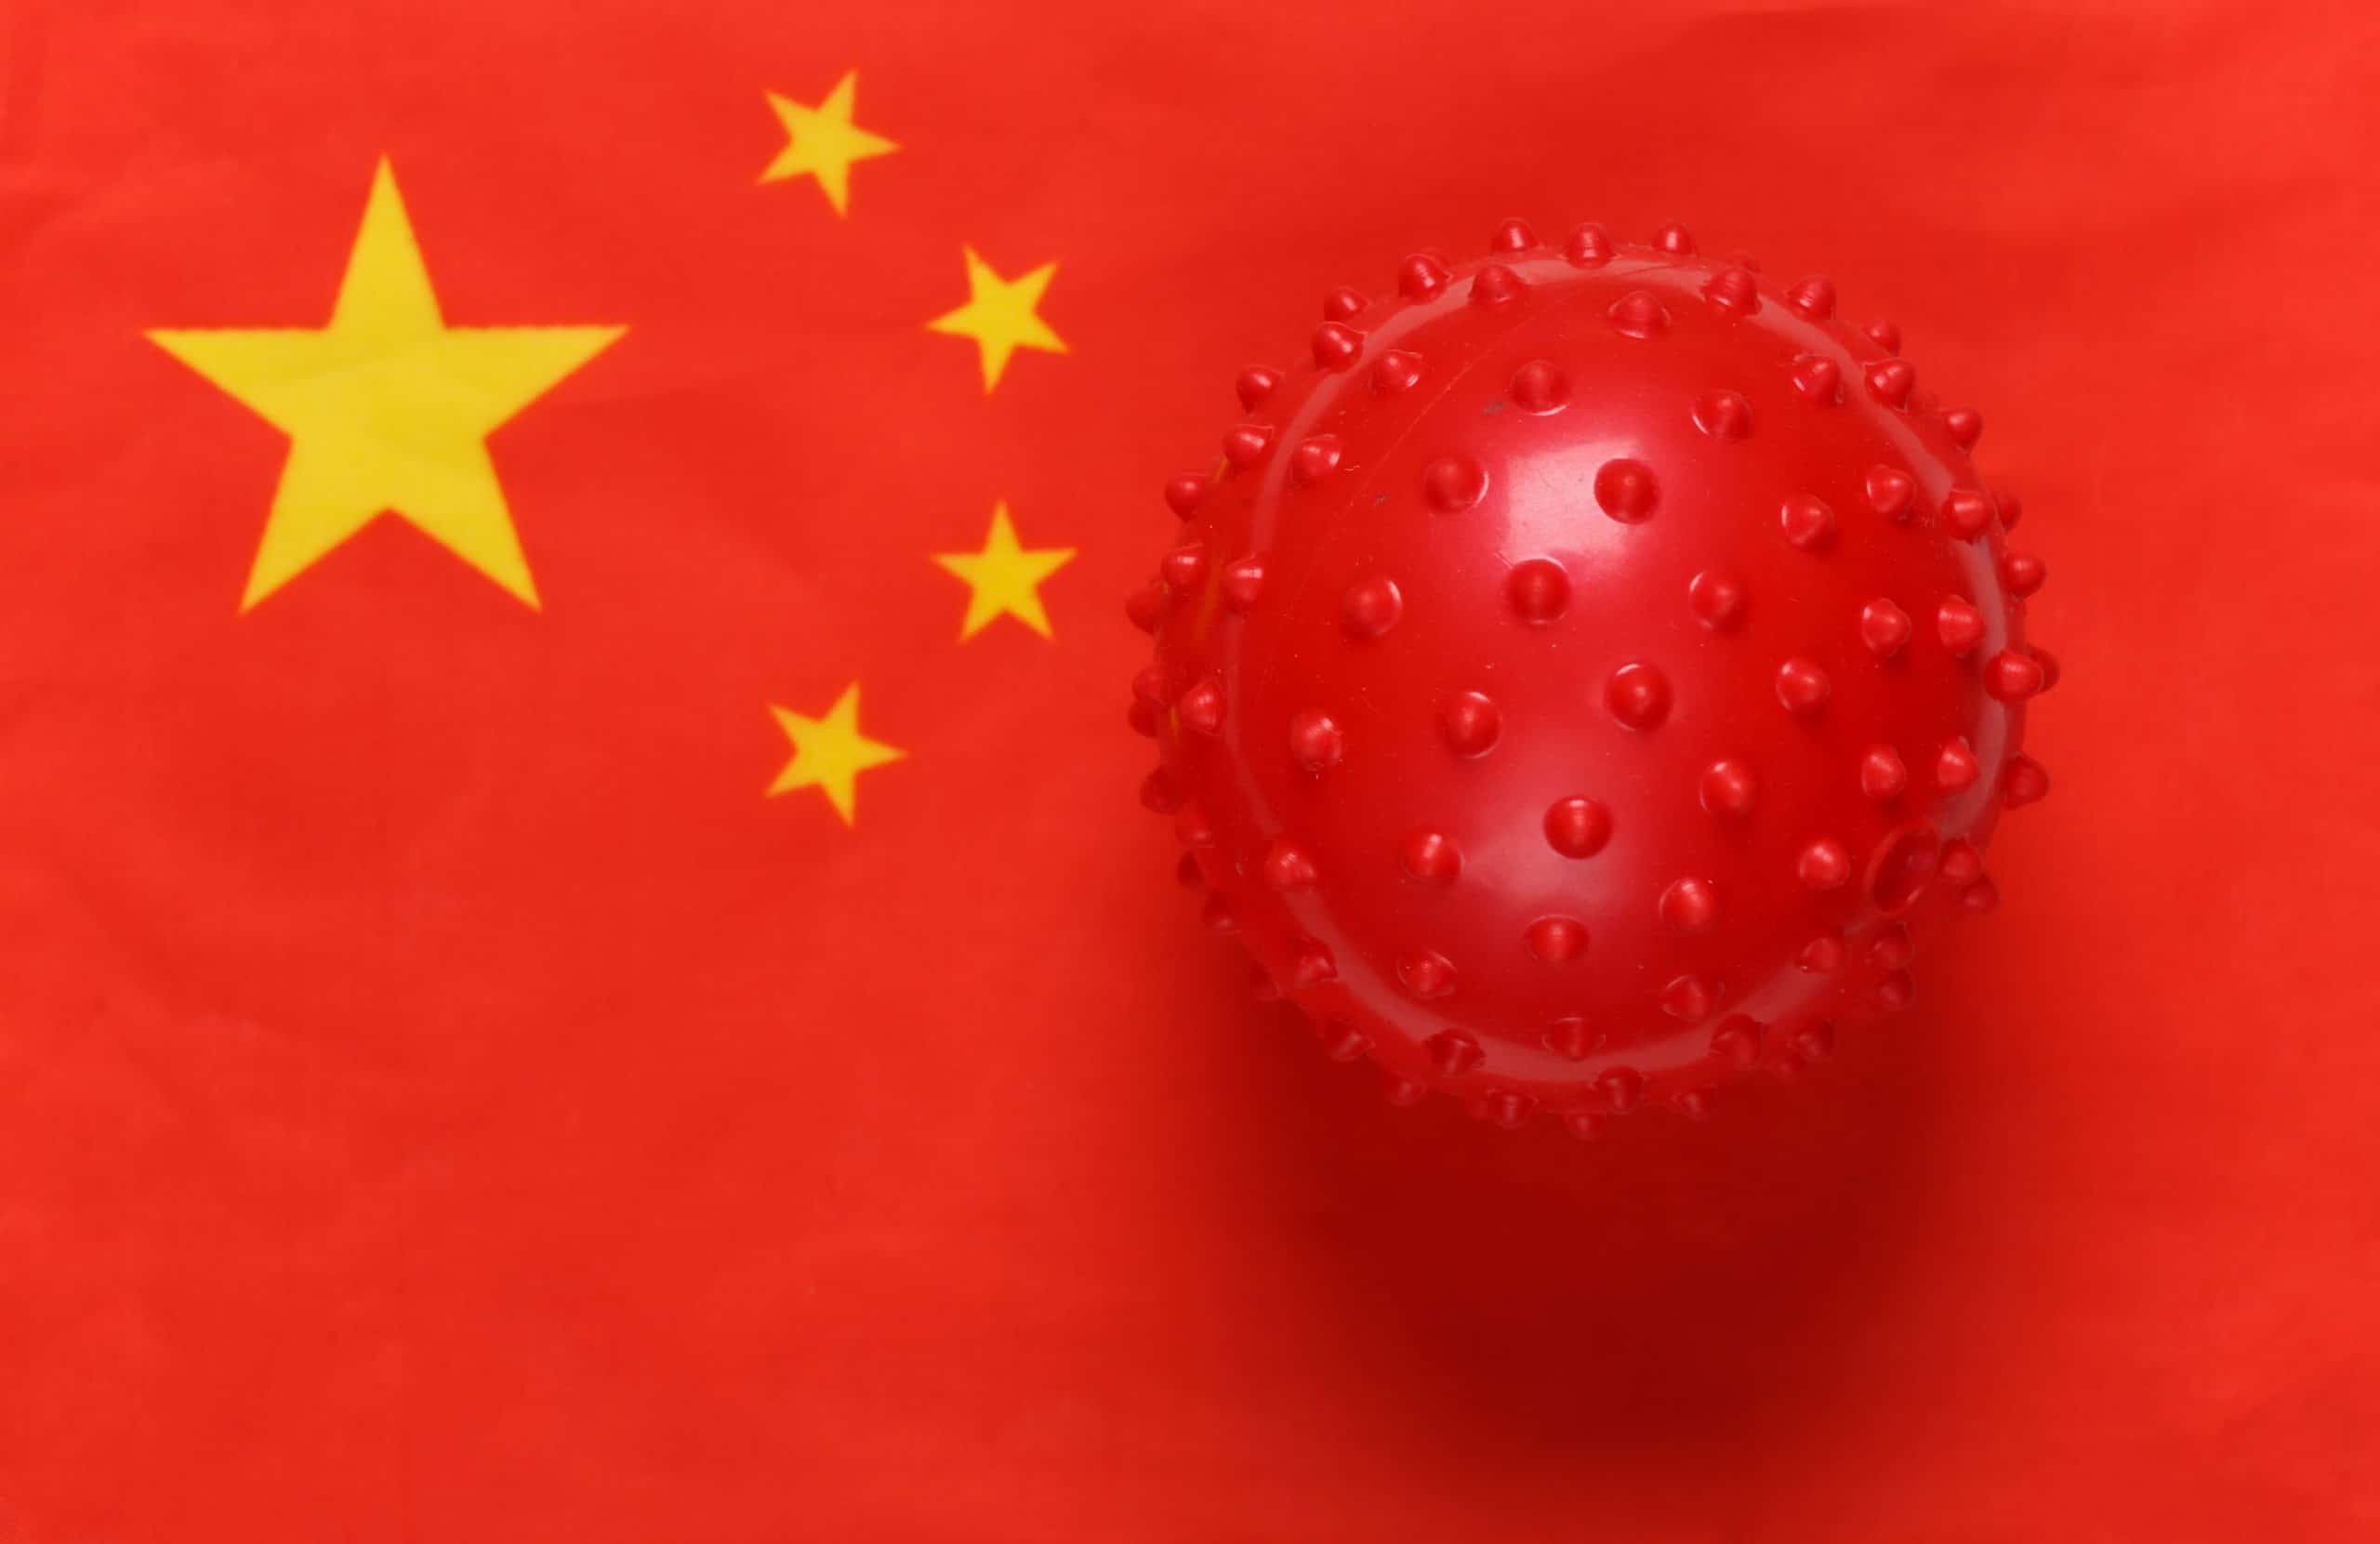 "La propagación de COVID-19 en China aumenta a un ritmo alarmante